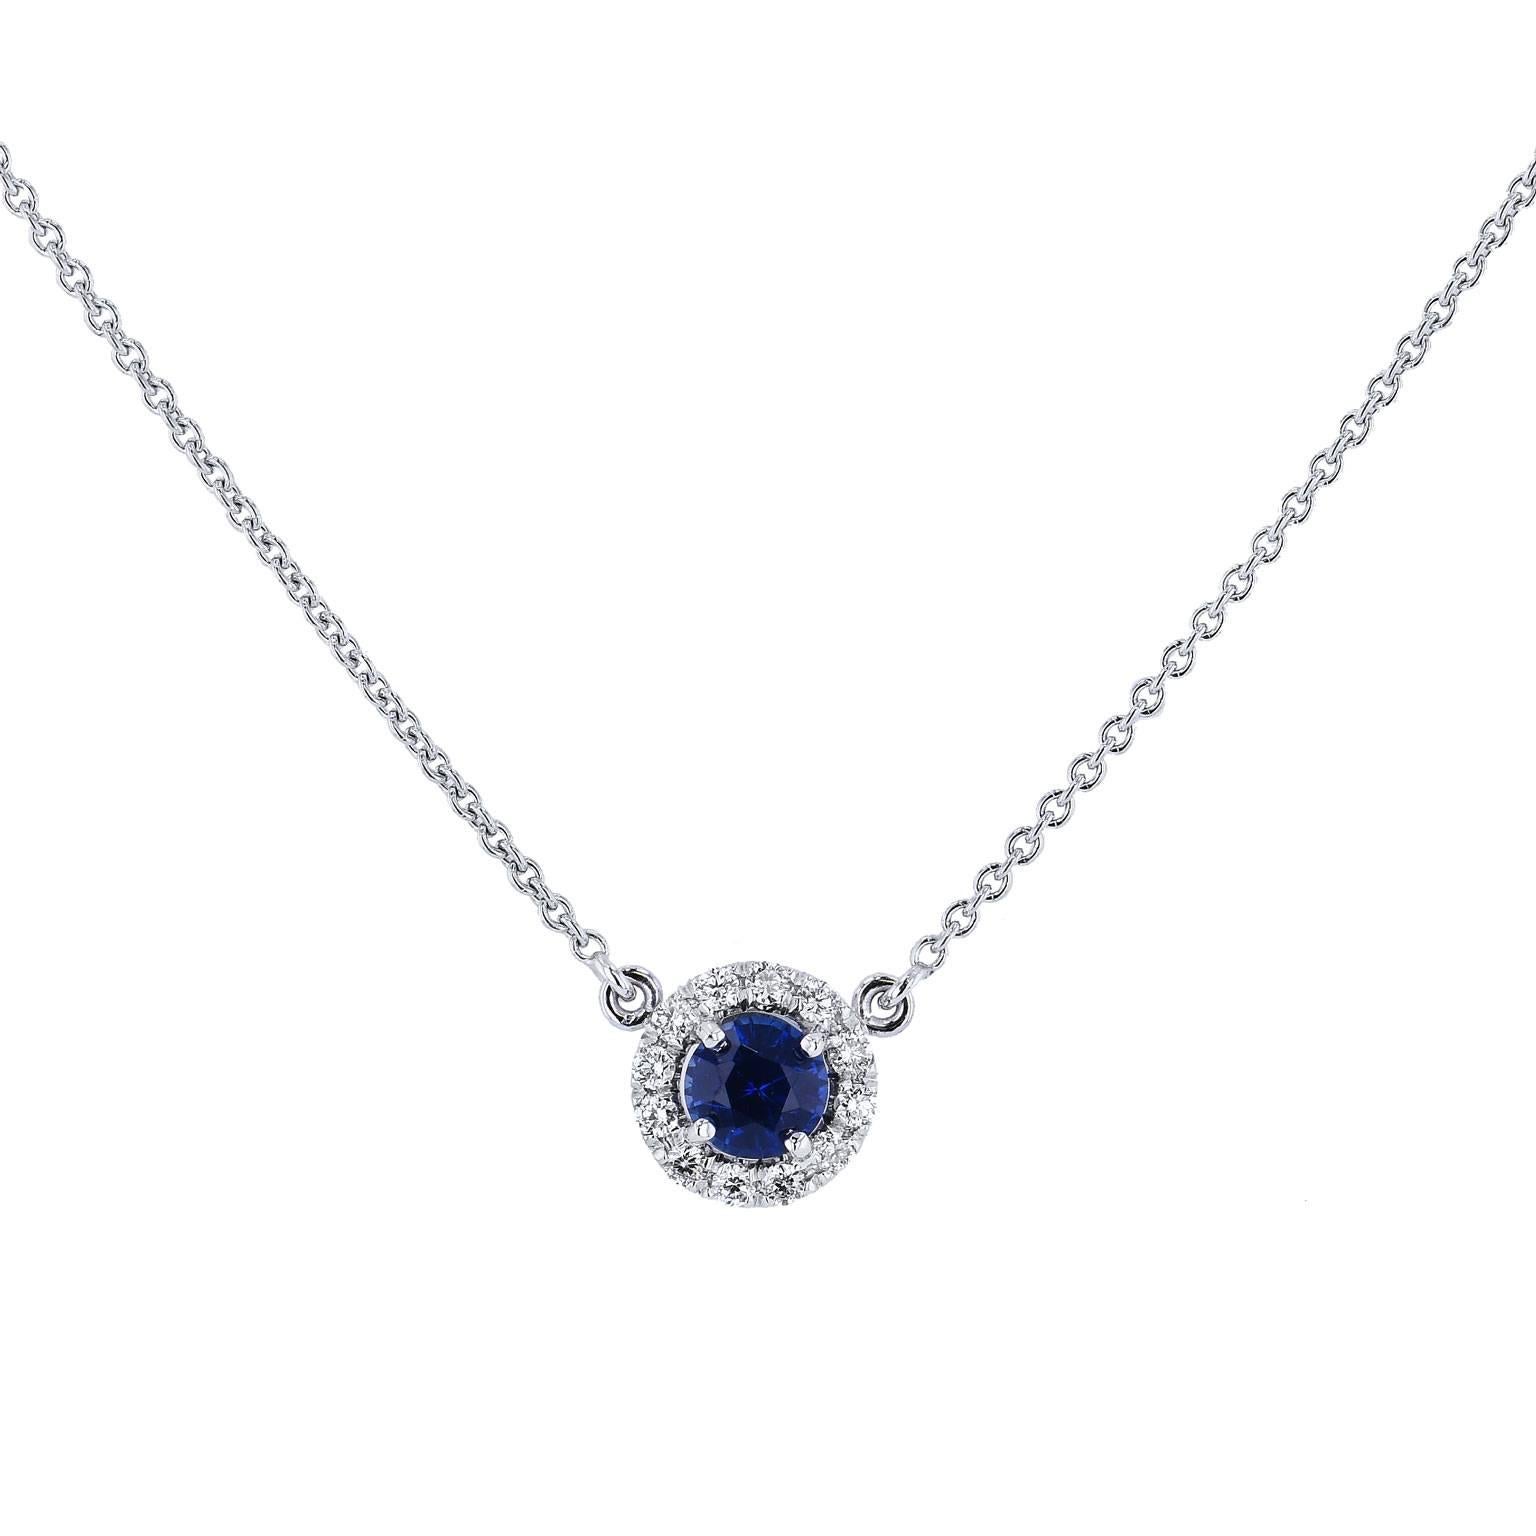 H & H 0.49 Carat Blue Sapphire Pendant Necklace